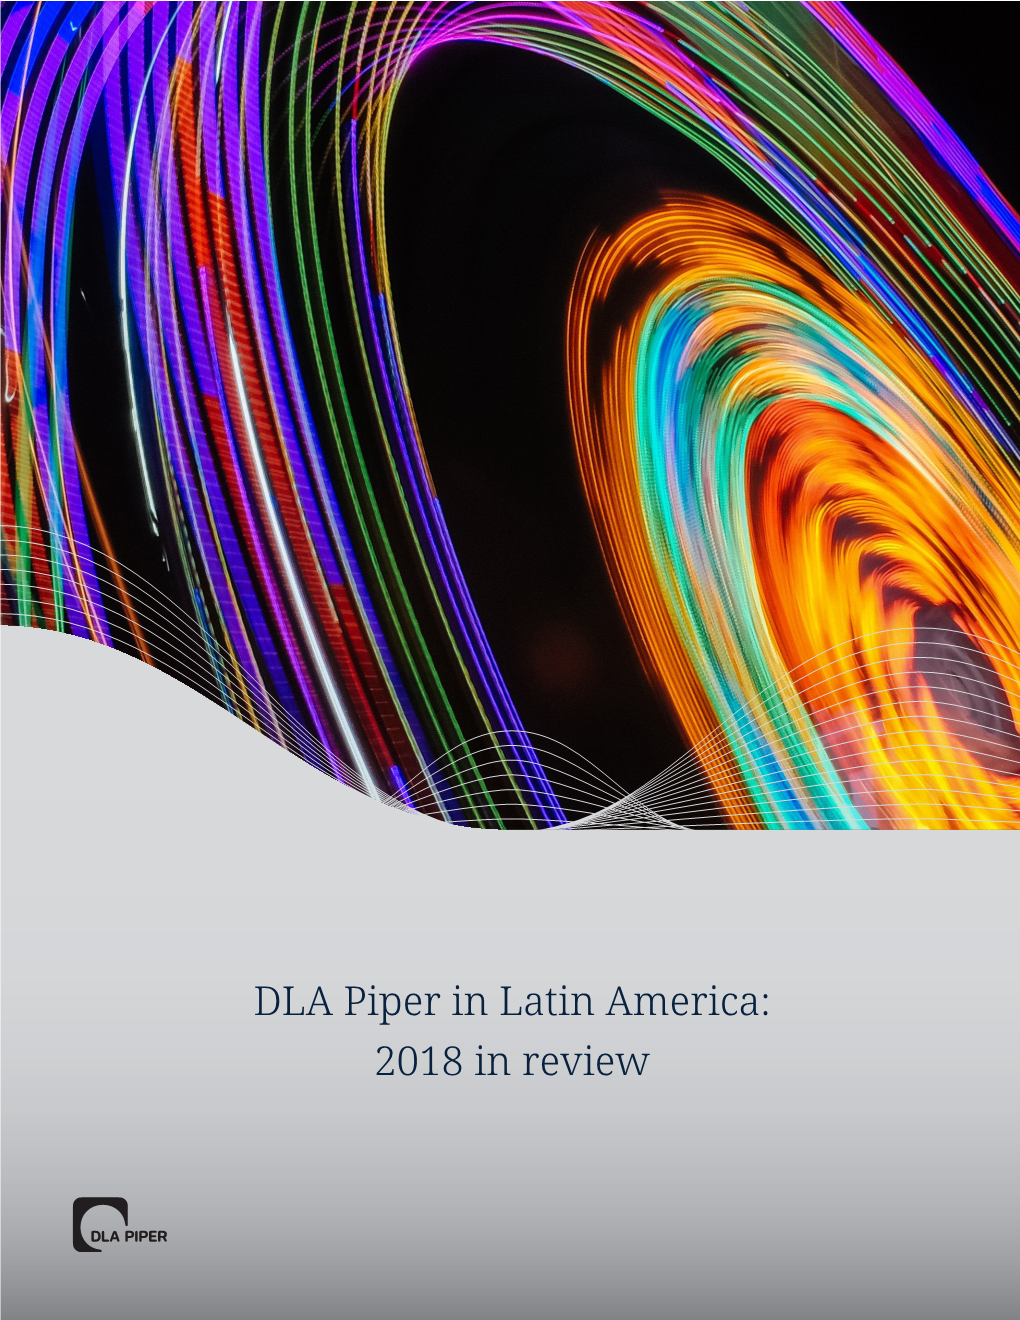 DLA Piper in Latin America: 2018 in Review